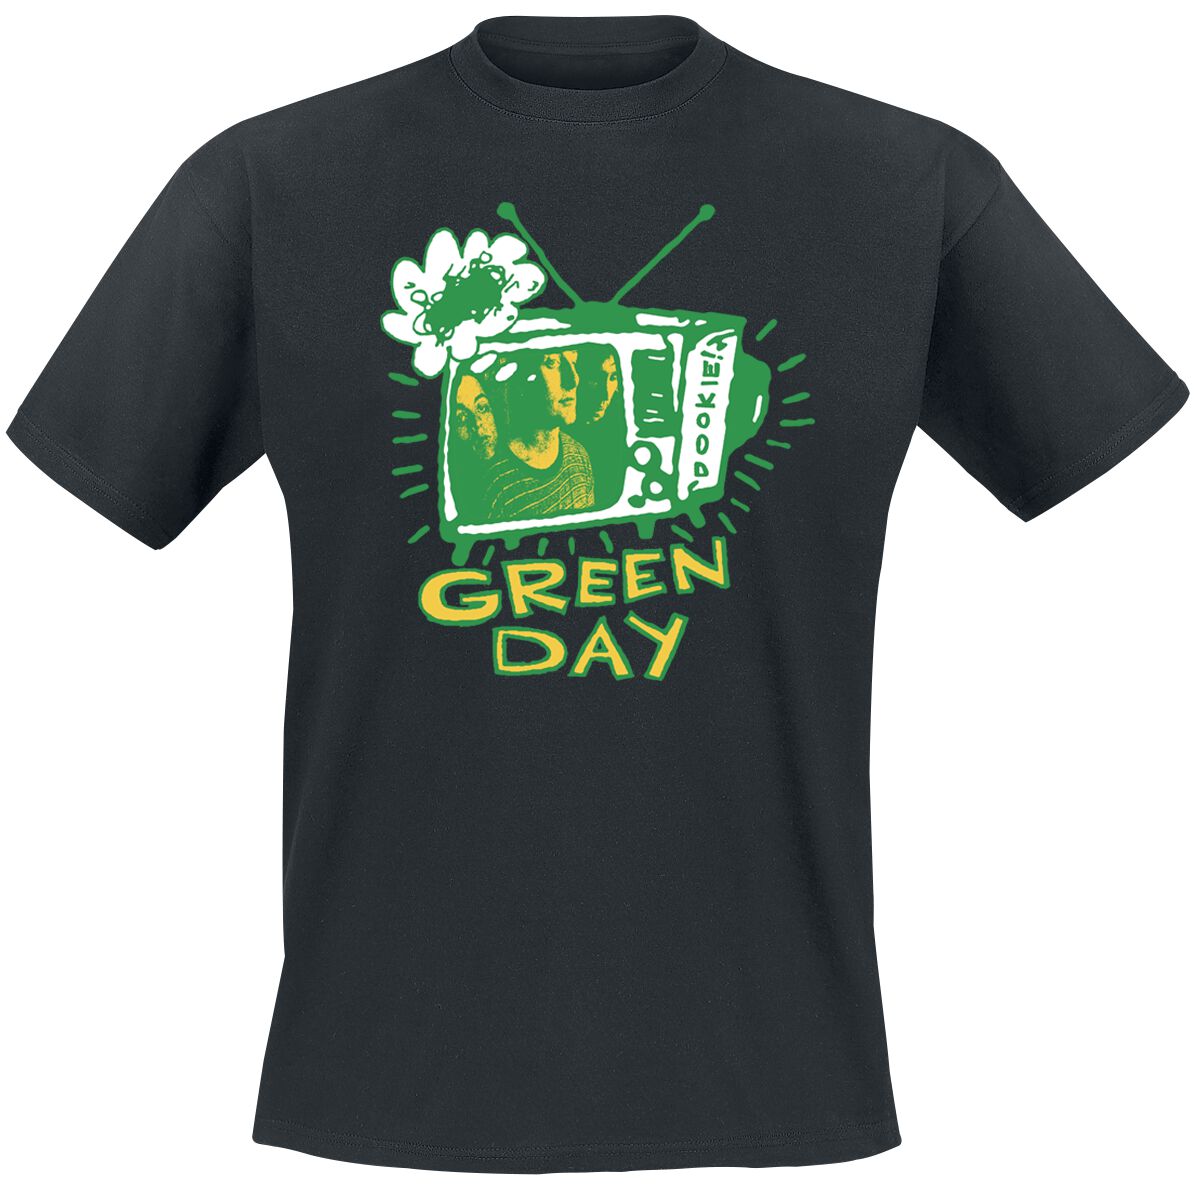 Green Day T-Shirt - Longview TV - S bis XXL - für Männer - Größe L - schwarz  - Lizenziertes Merchandise!